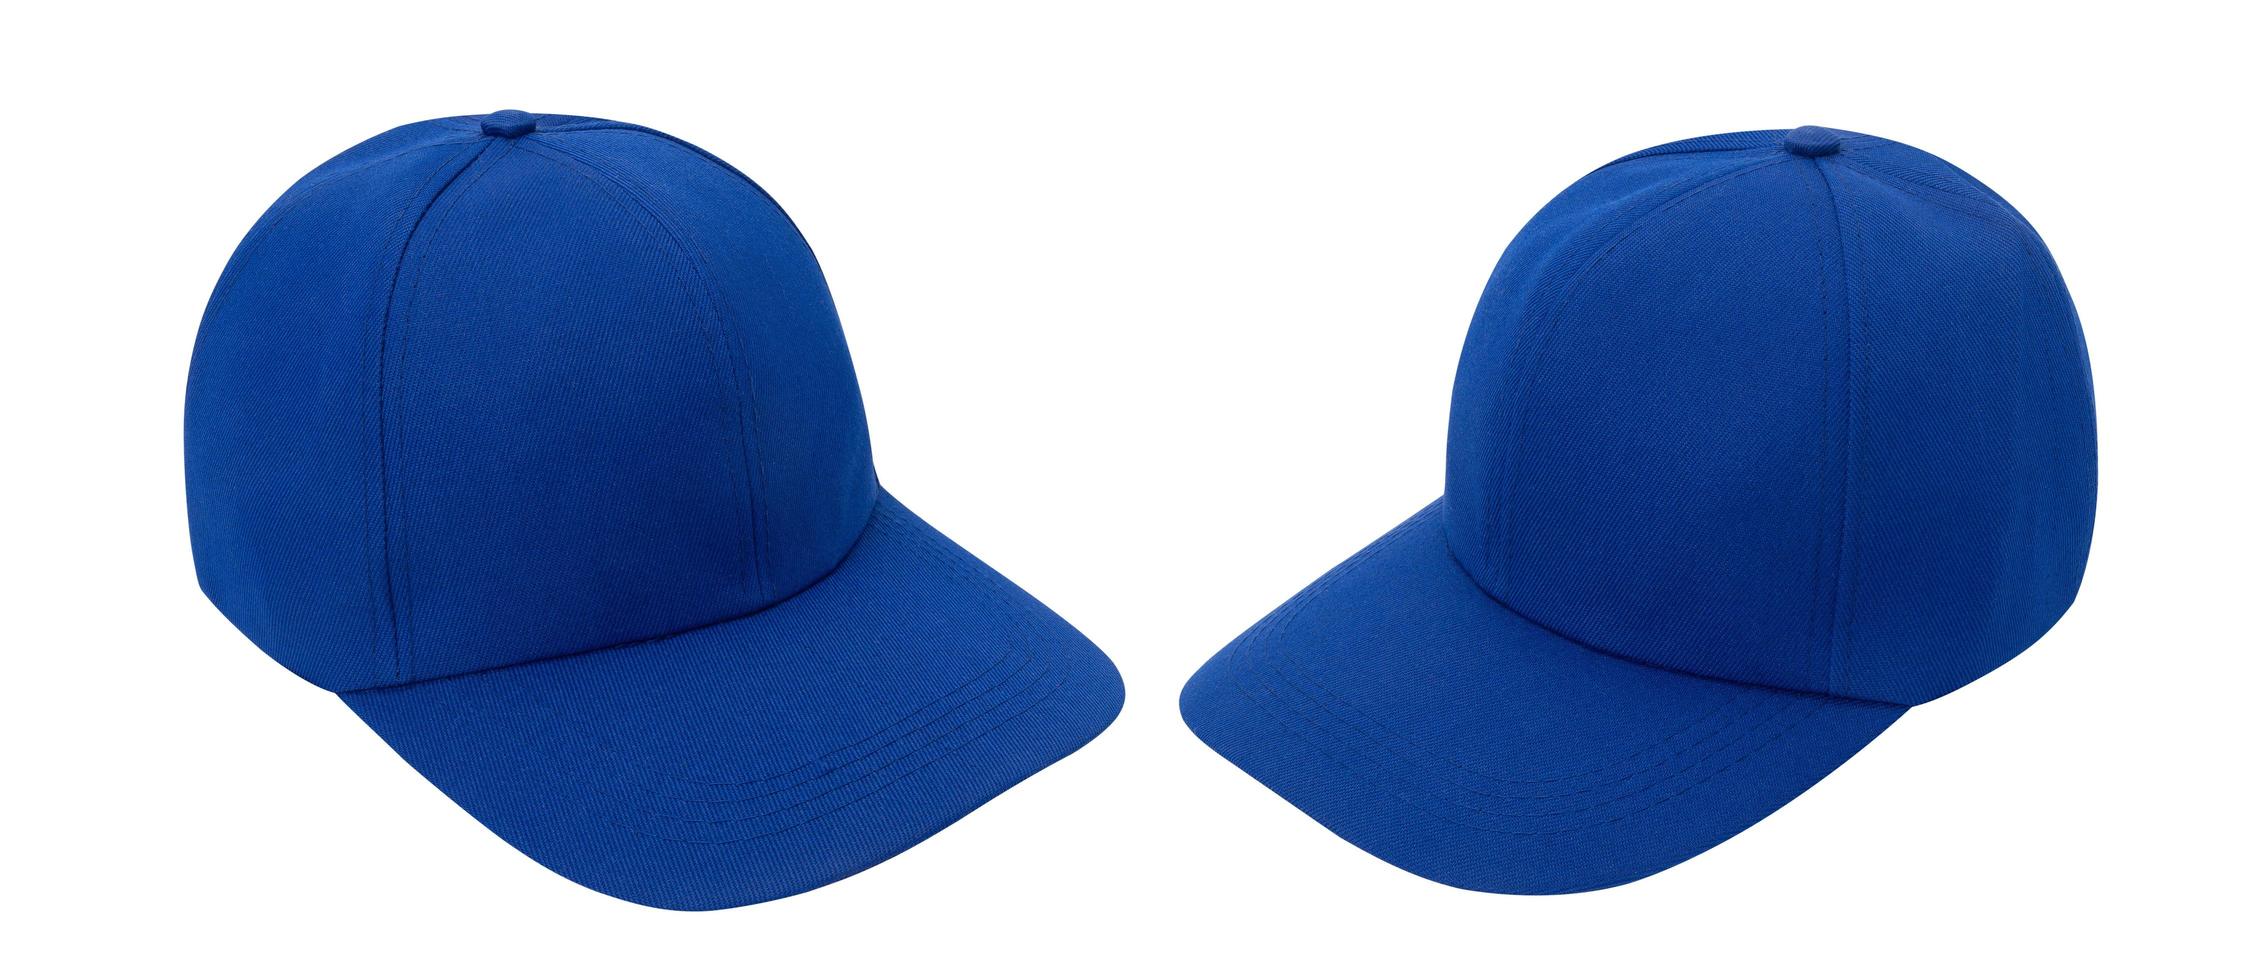 blauwe baseballcap mockup foto